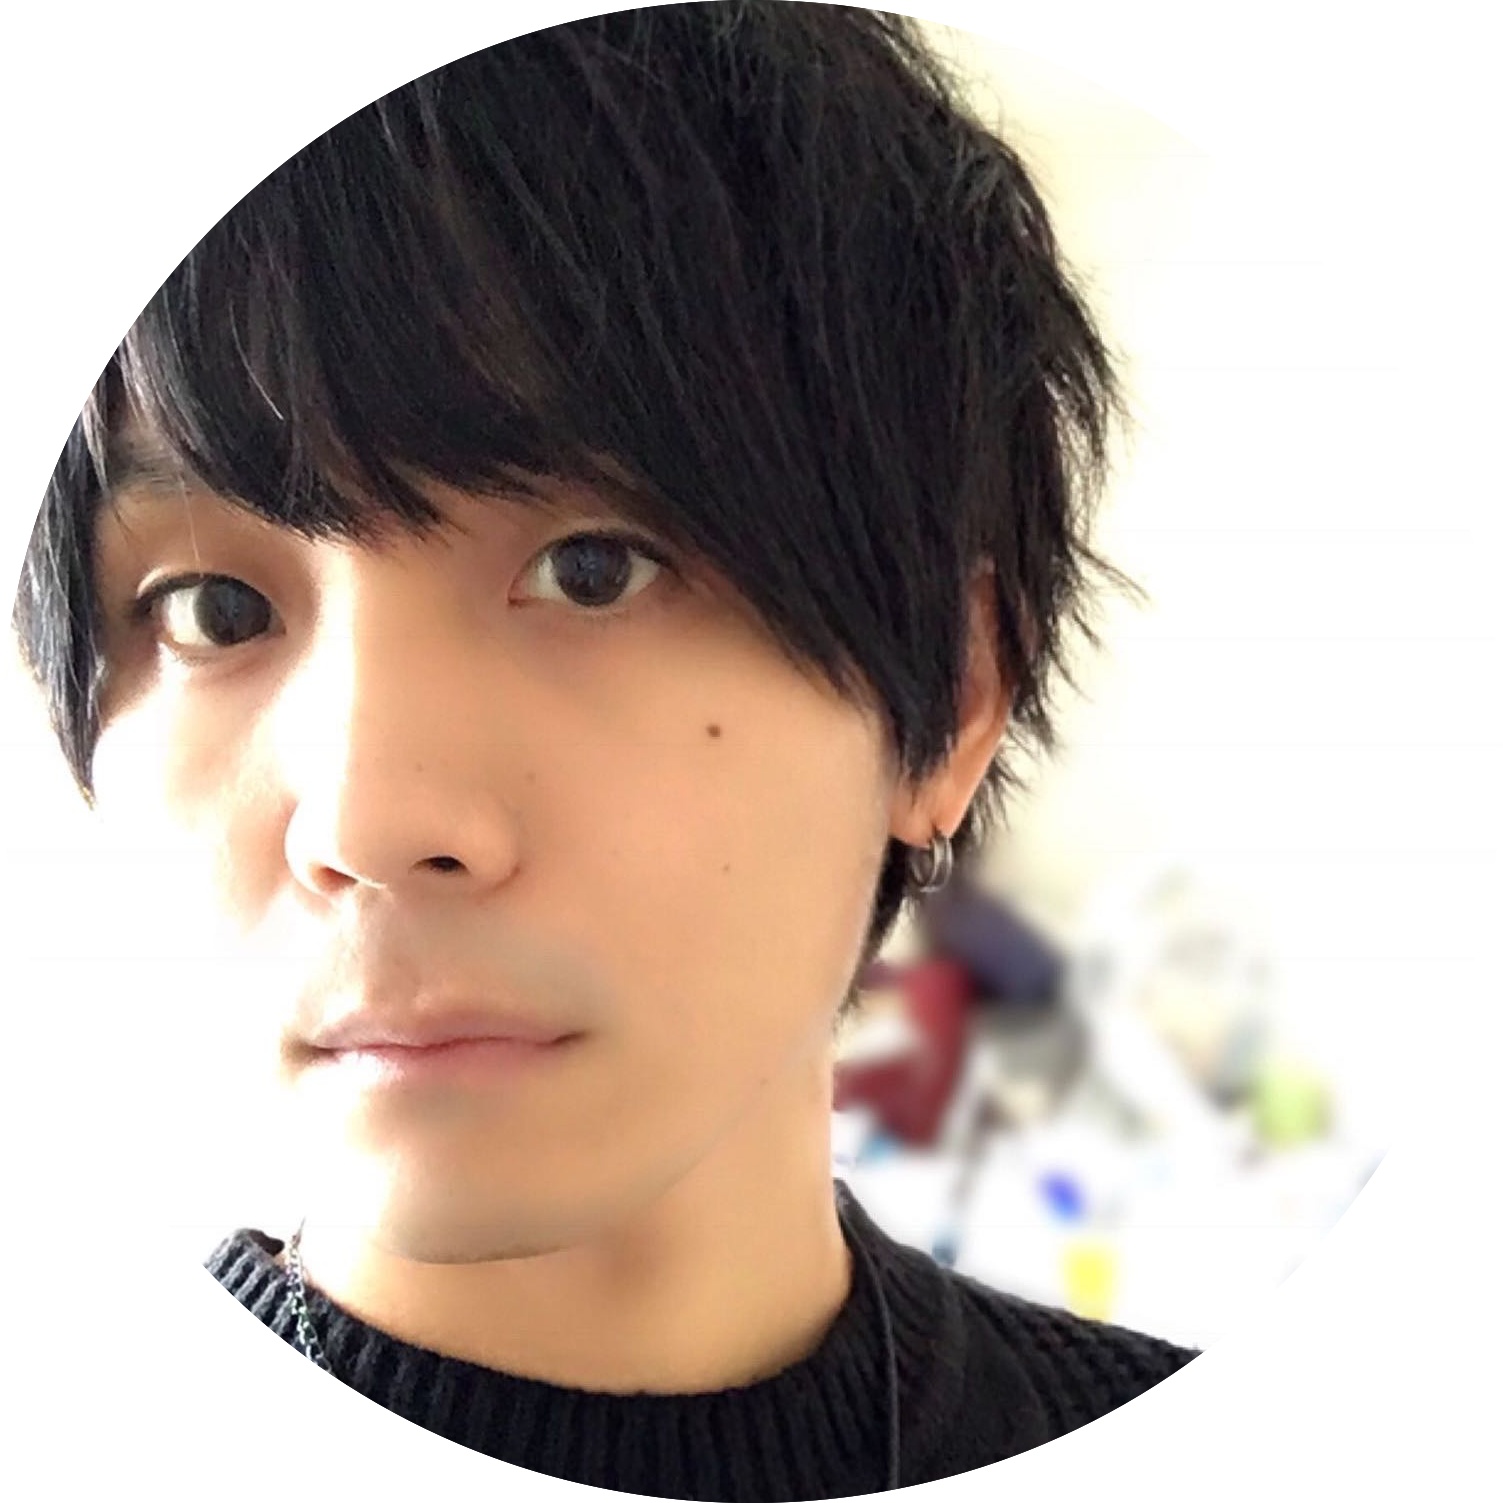 無料 フリーランス美容師セミナー 横浜 Oikemotoki オオイケモトキ くせ毛カット の得意な美容師